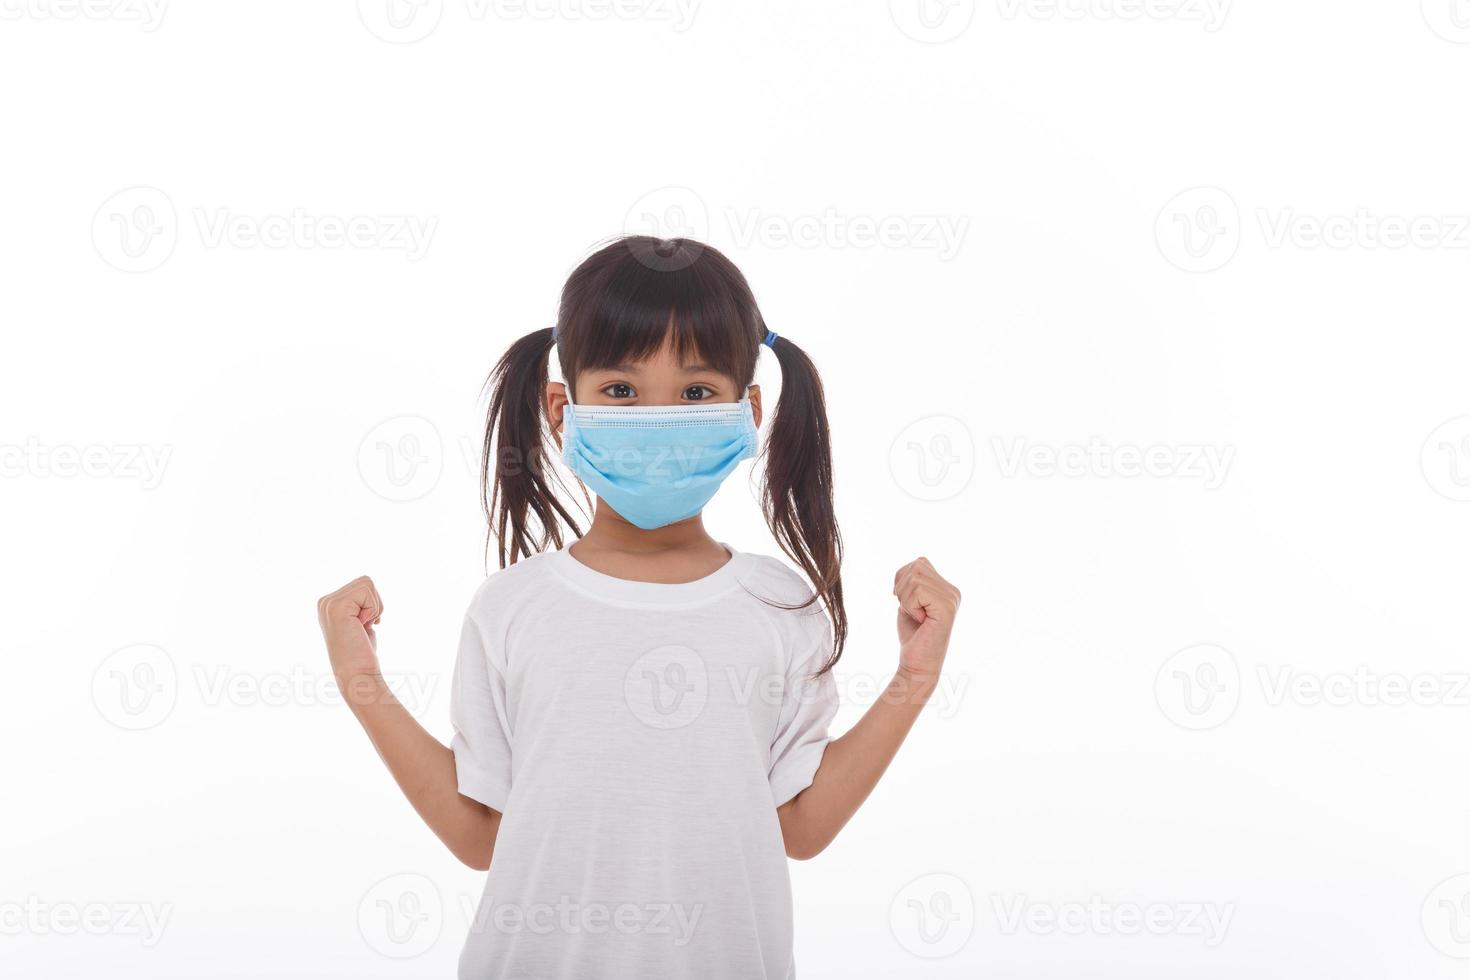 Asien flicka bär mask till skydda mot coronavirus, flicka visa en näve uppmuntra till bekämpa smittosam sjukdom begrepp sluta virus covid 19 utbrott till vinna på vit bakgrund foto